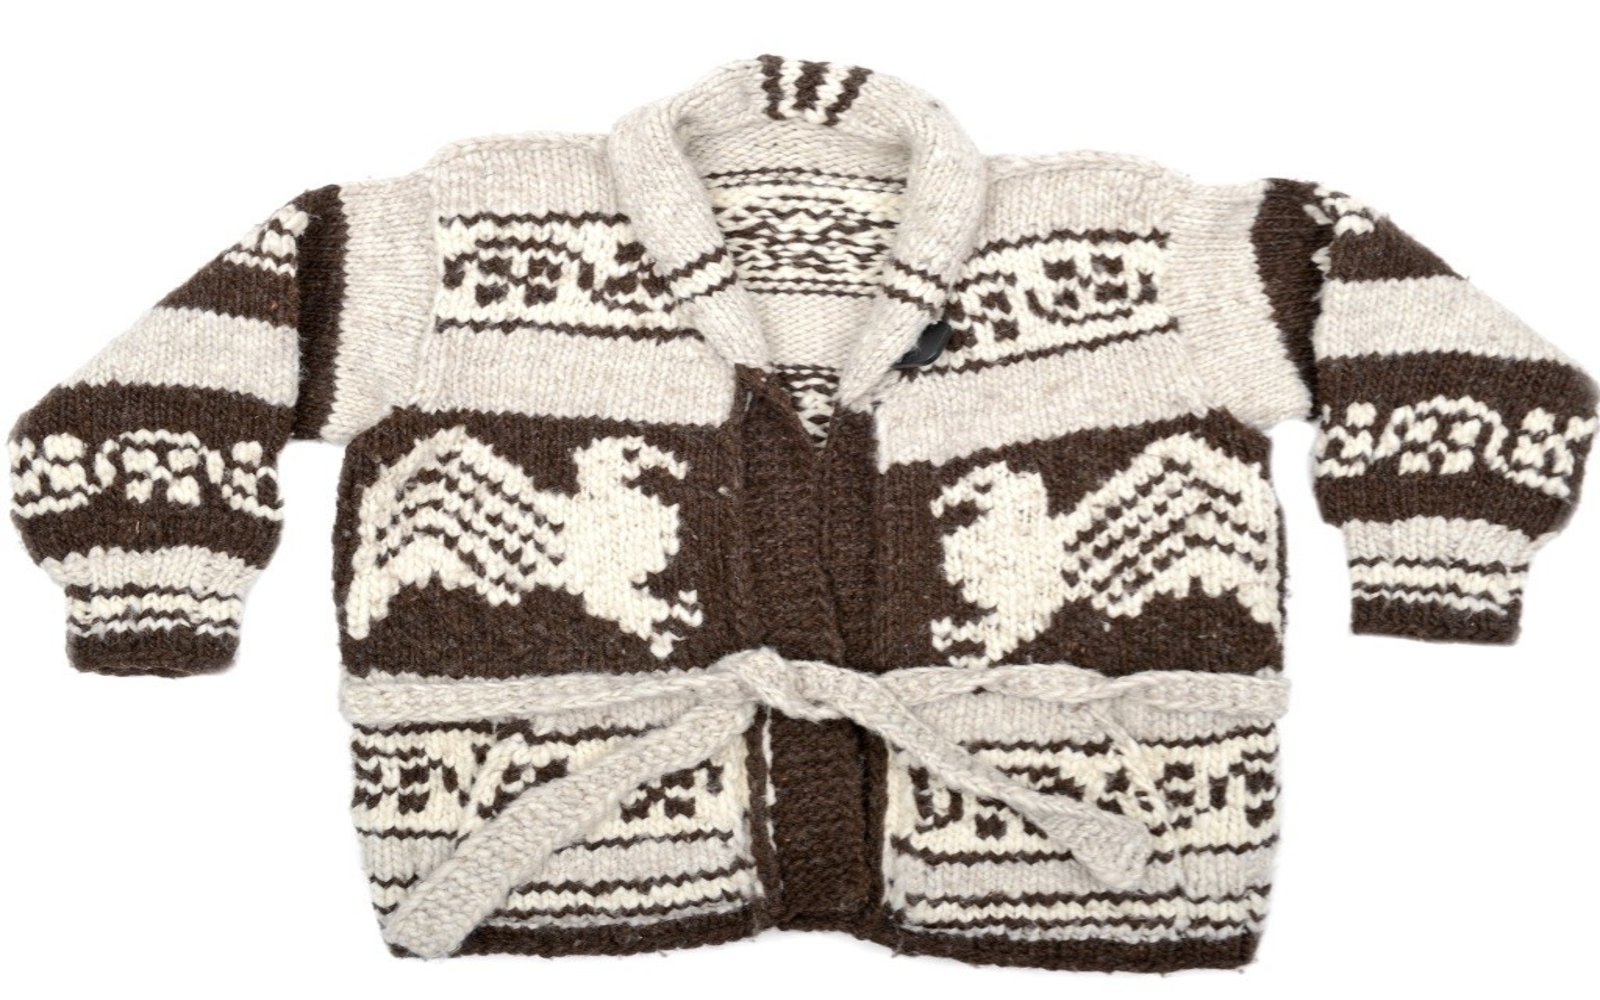 A unique Cowichan Sweater